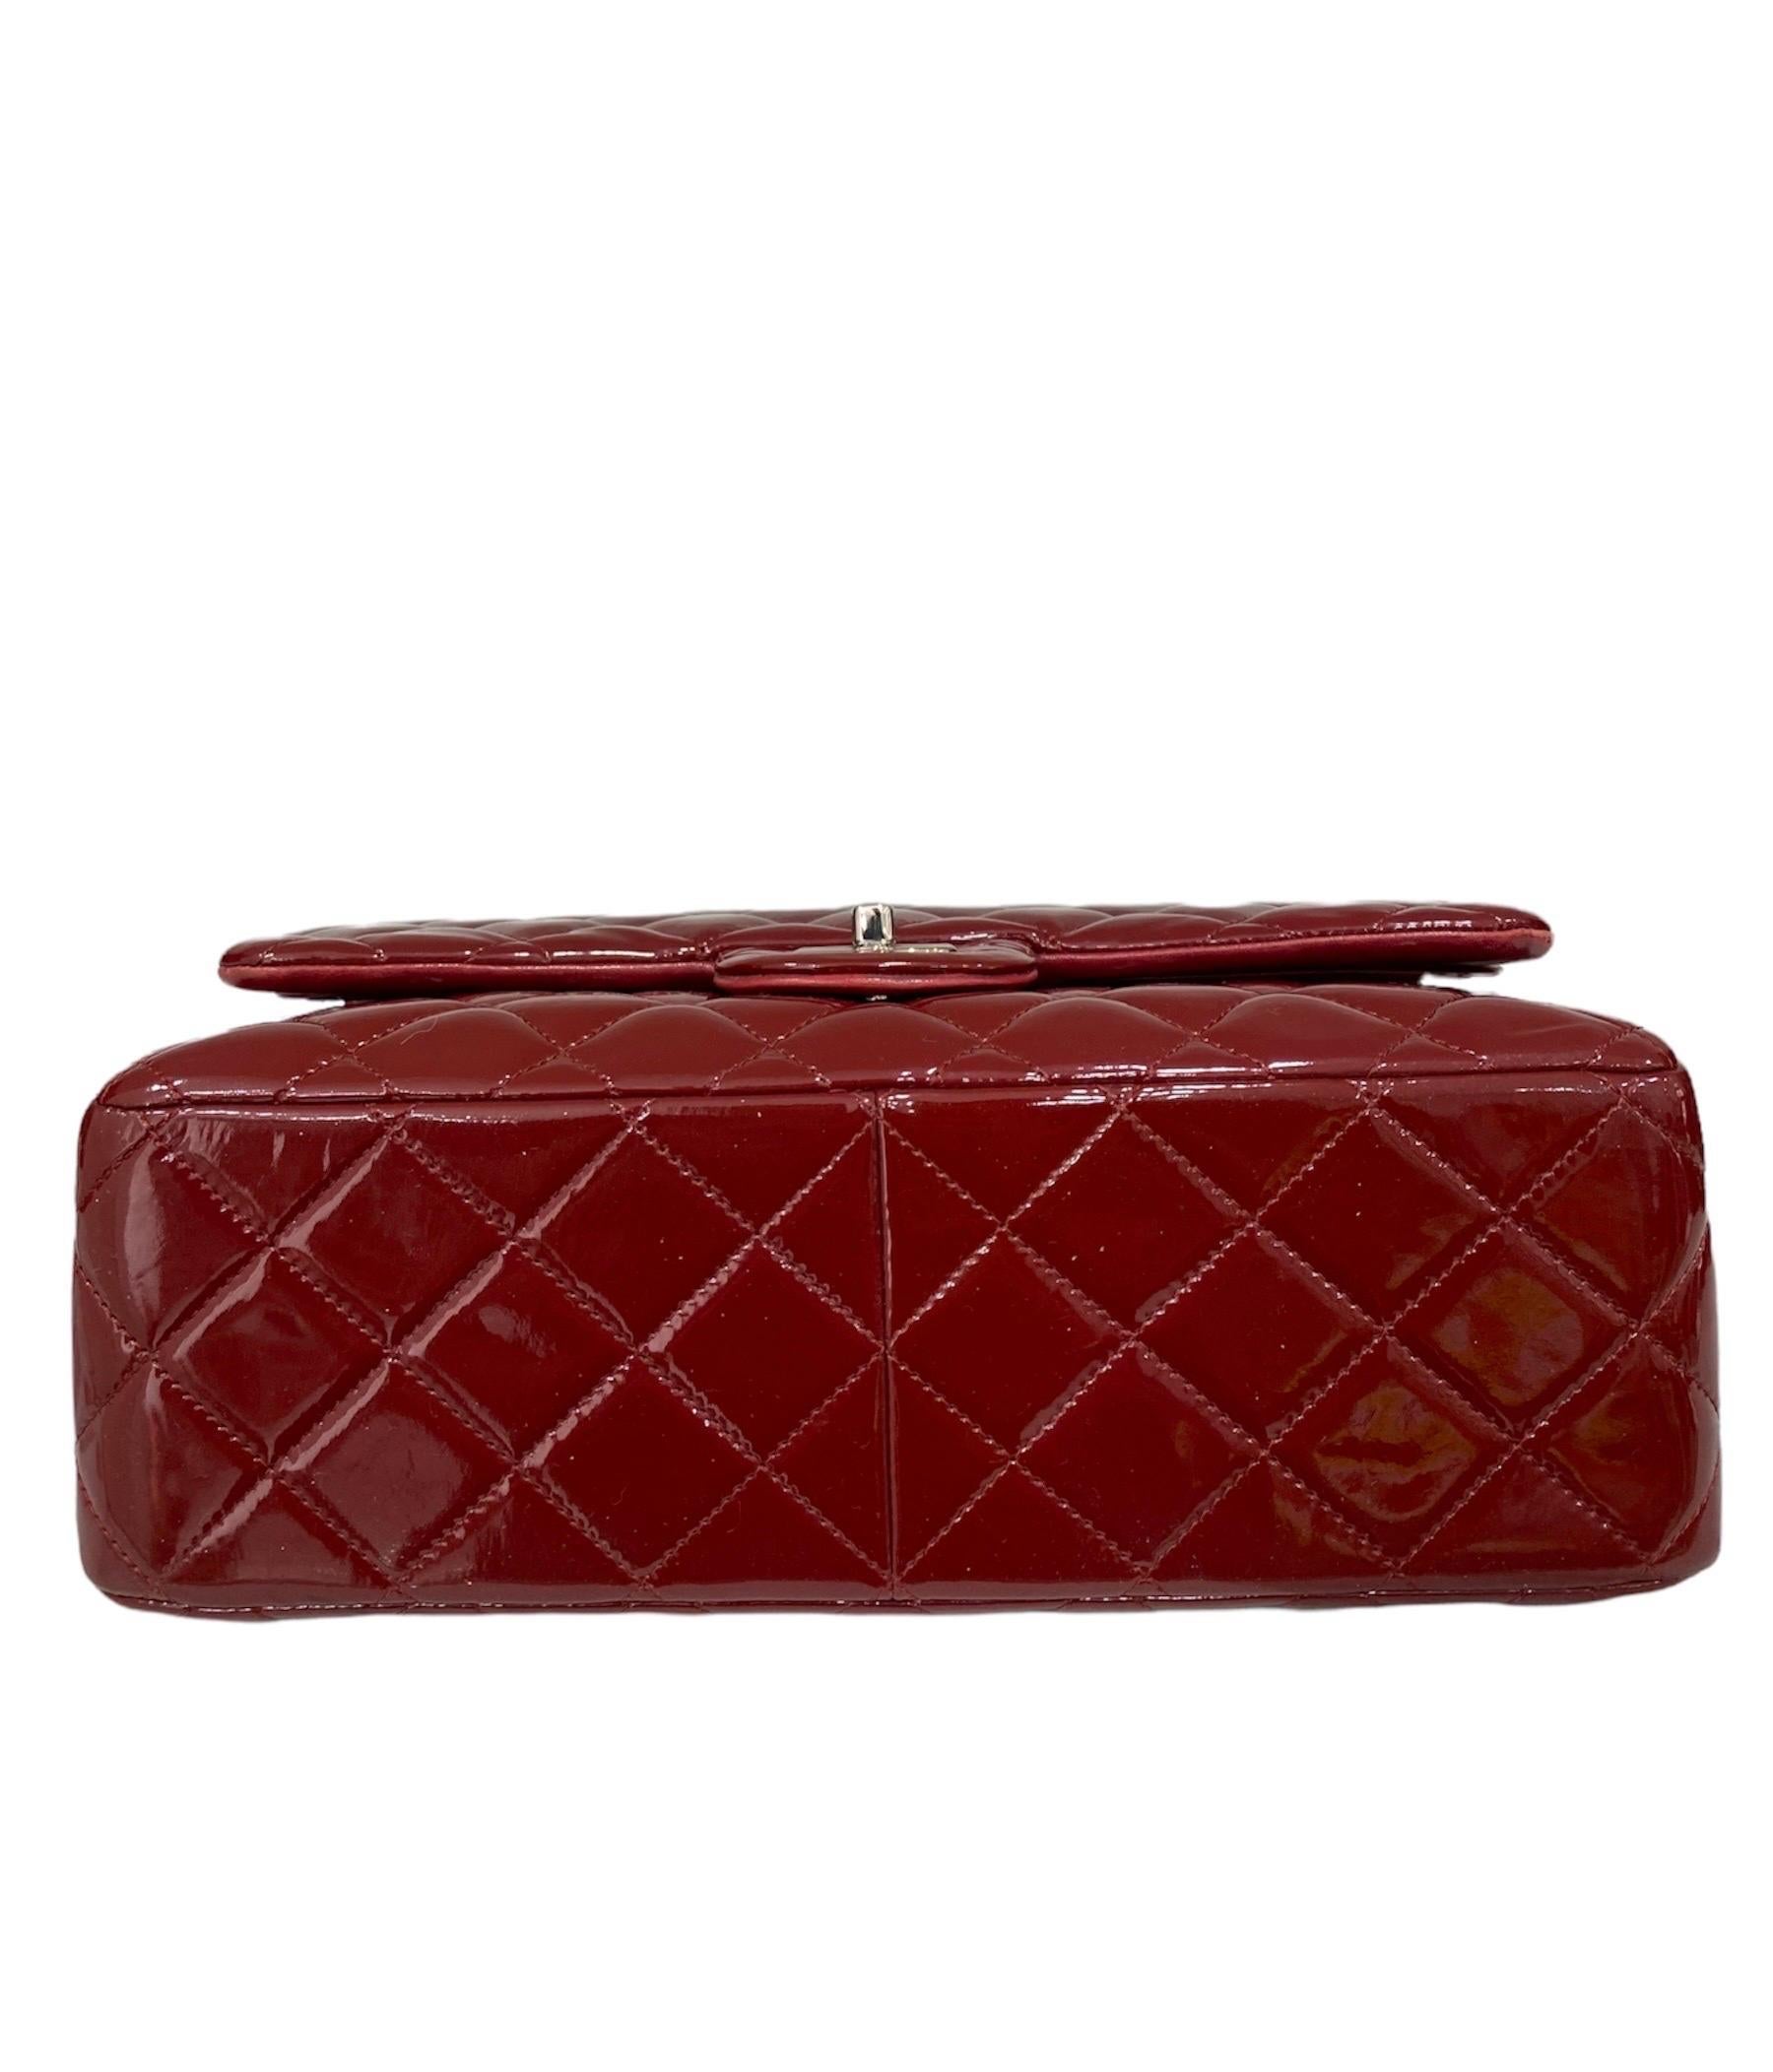 Brown 2011 Chanel Jumbo Red Vernis Shoulder Bag